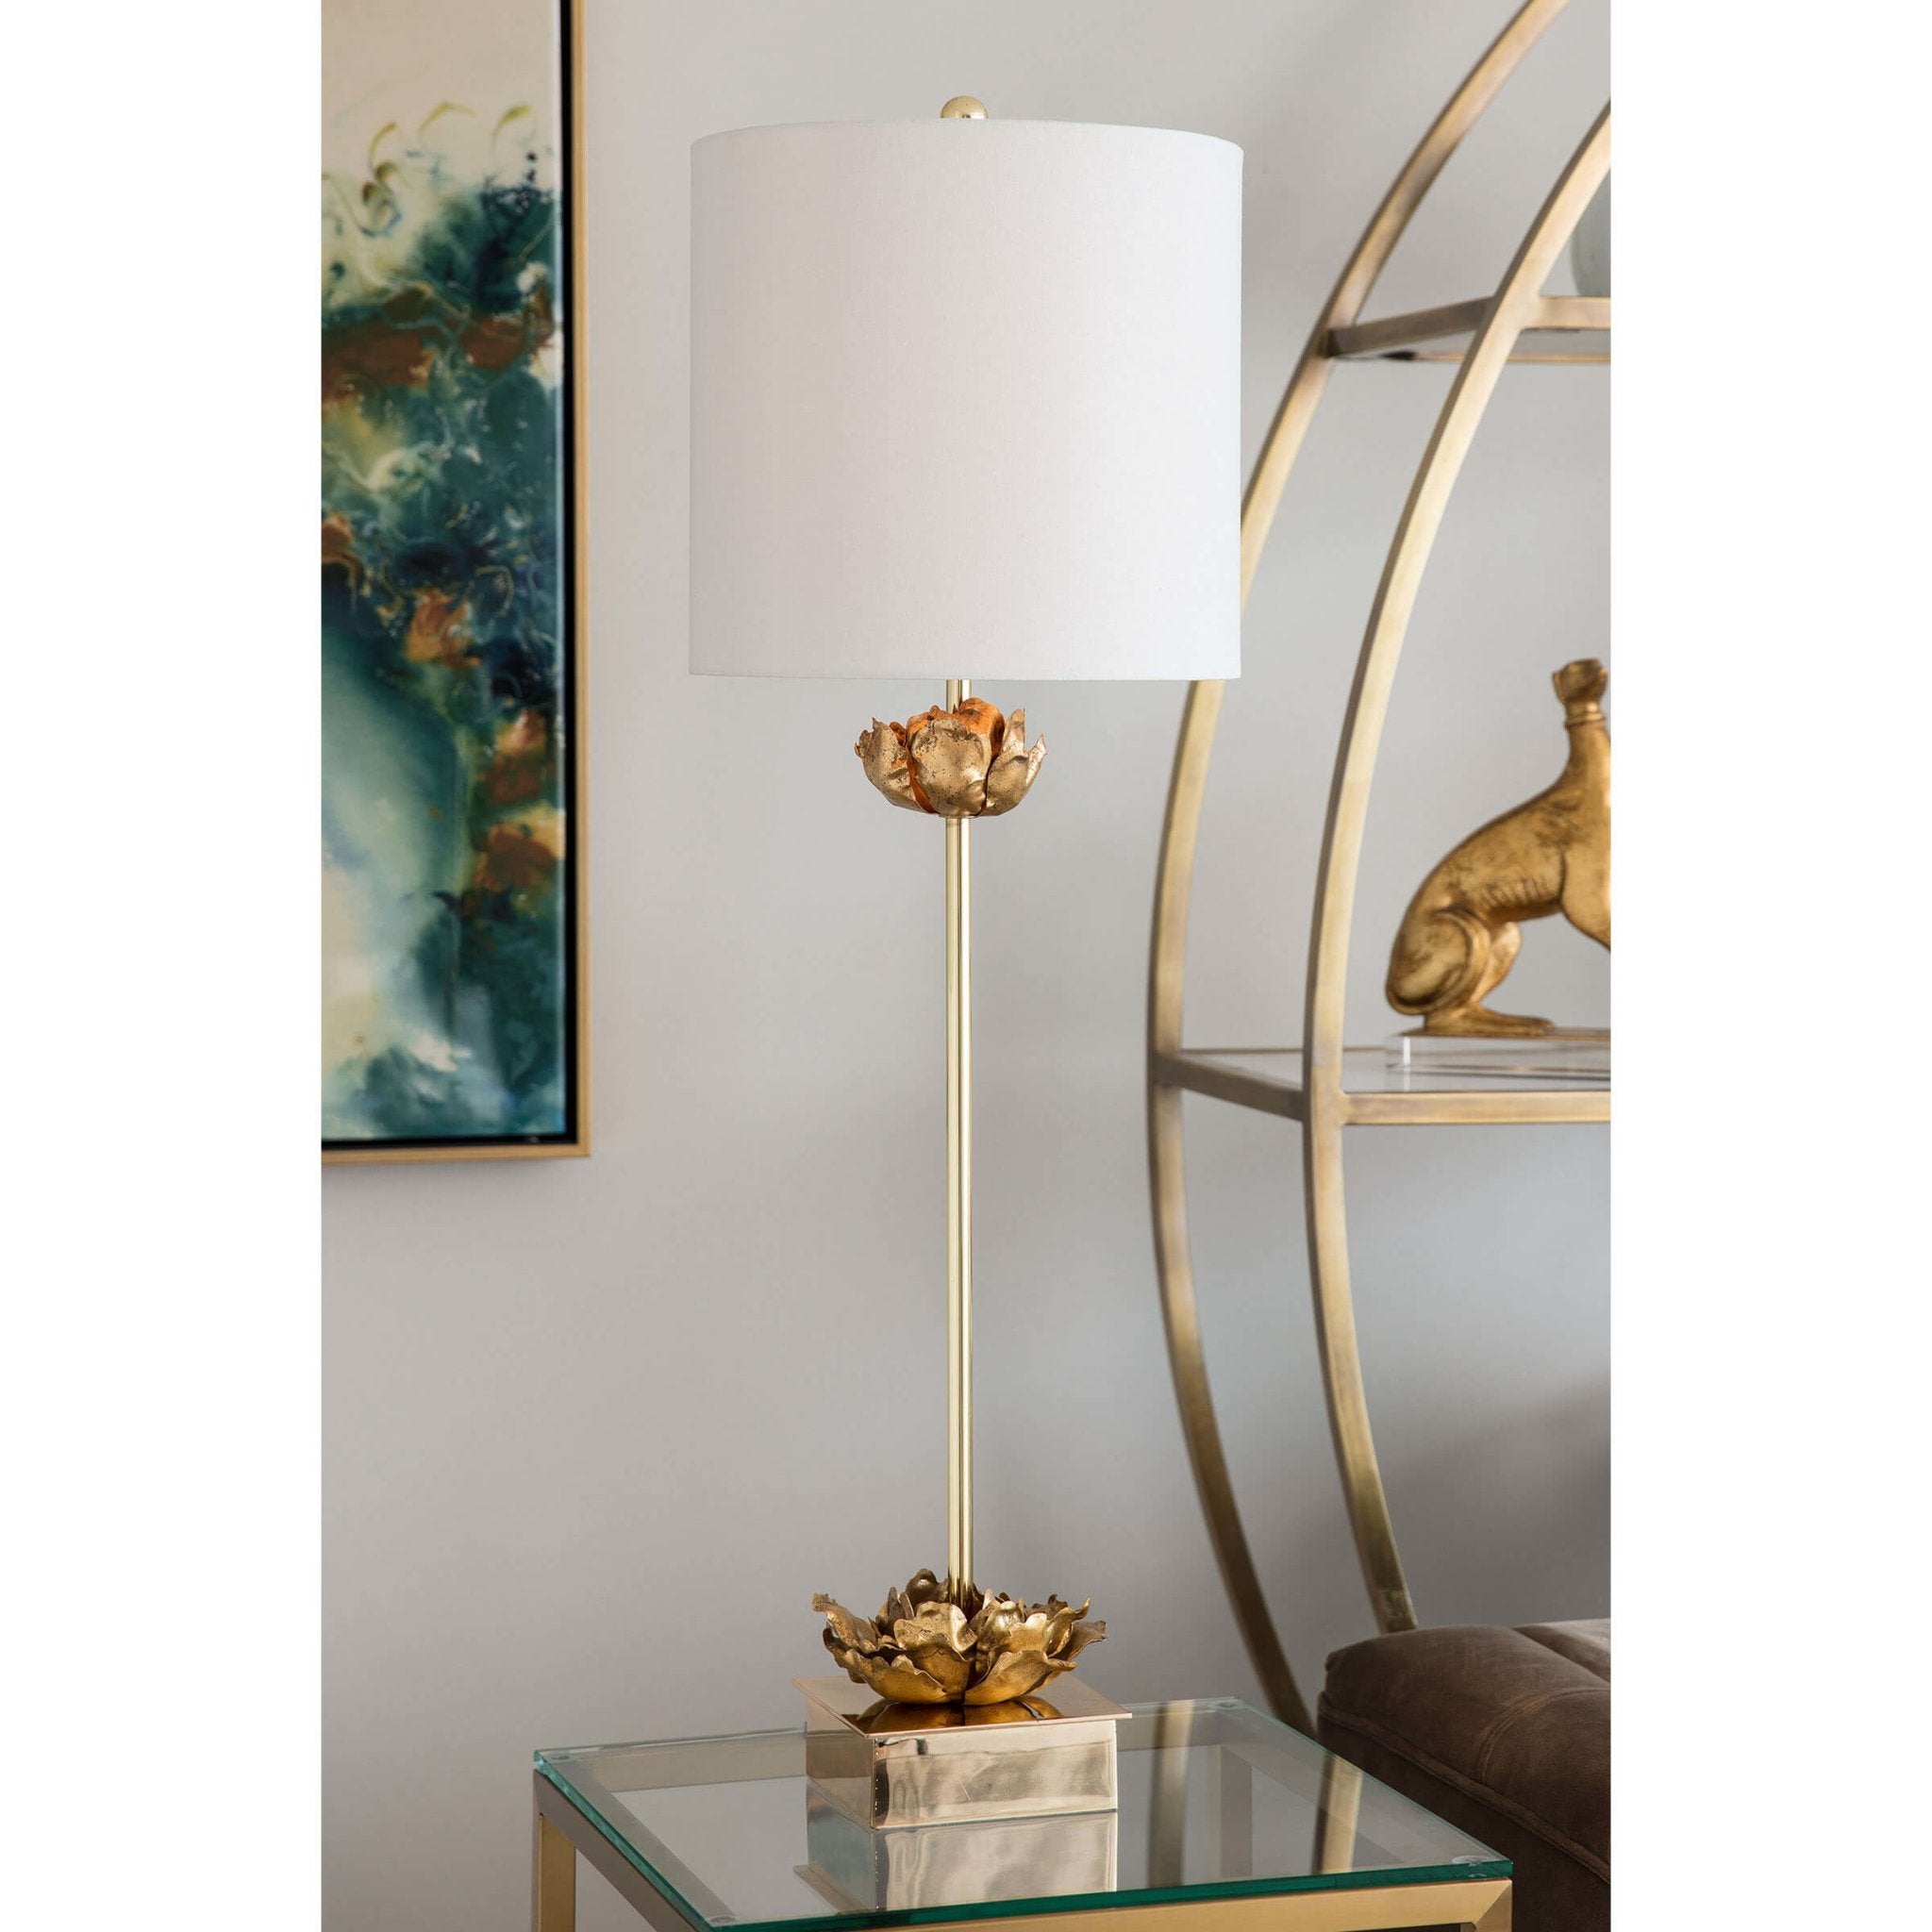 Adeline Buffet Table Lamp - Decor - Tipplergoods